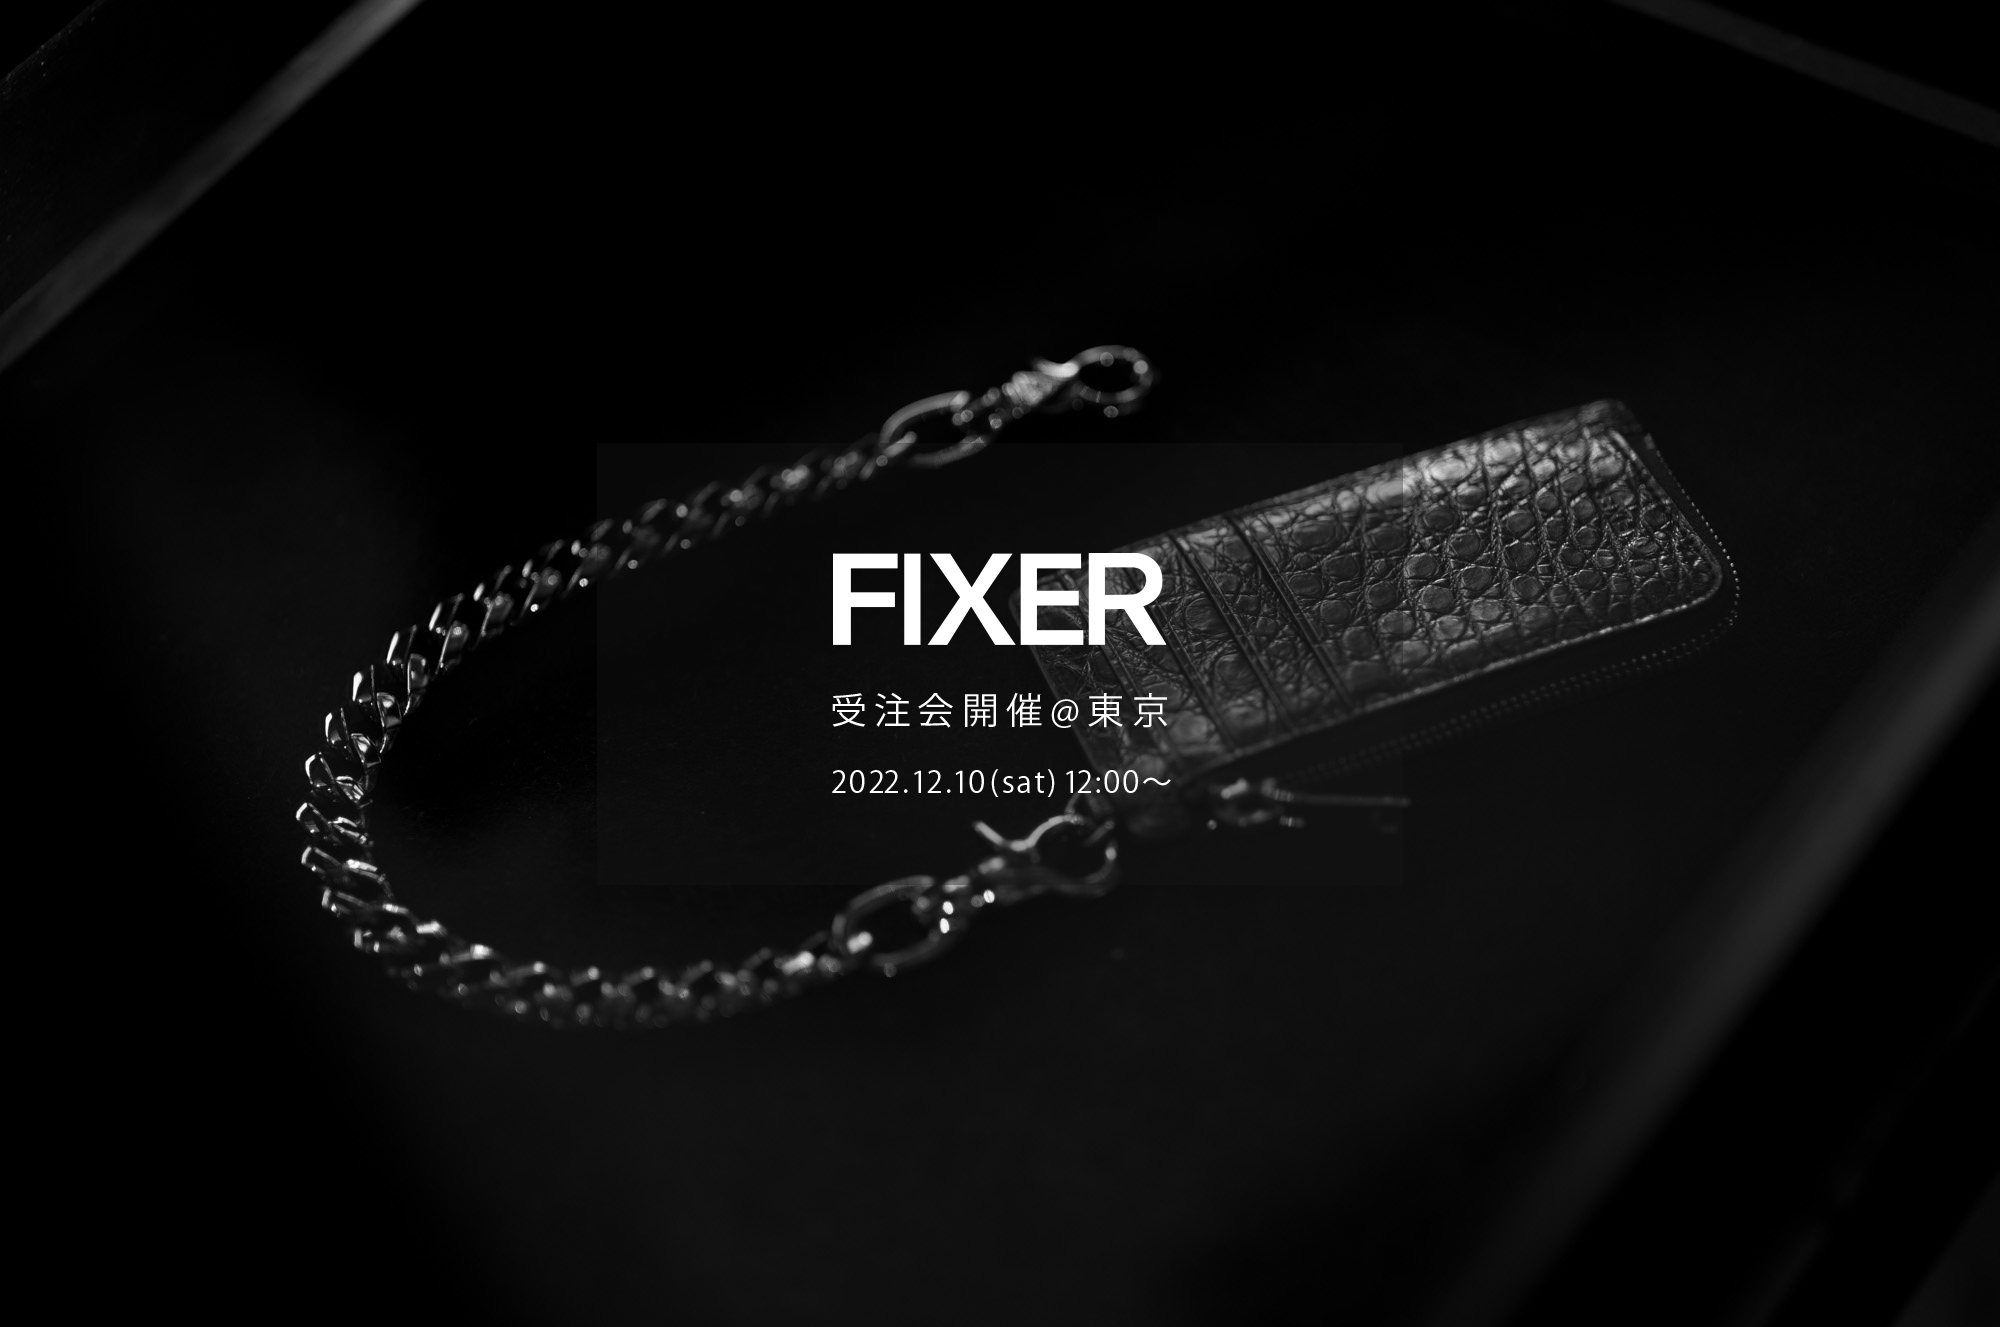 FIXER (フィクサー) FWL-01 クロコダイル レザー ショートウォレット BLACK (ブラック) 愛知 名古屋 Alto e Diritto altoediritto アルトエデリット 財布